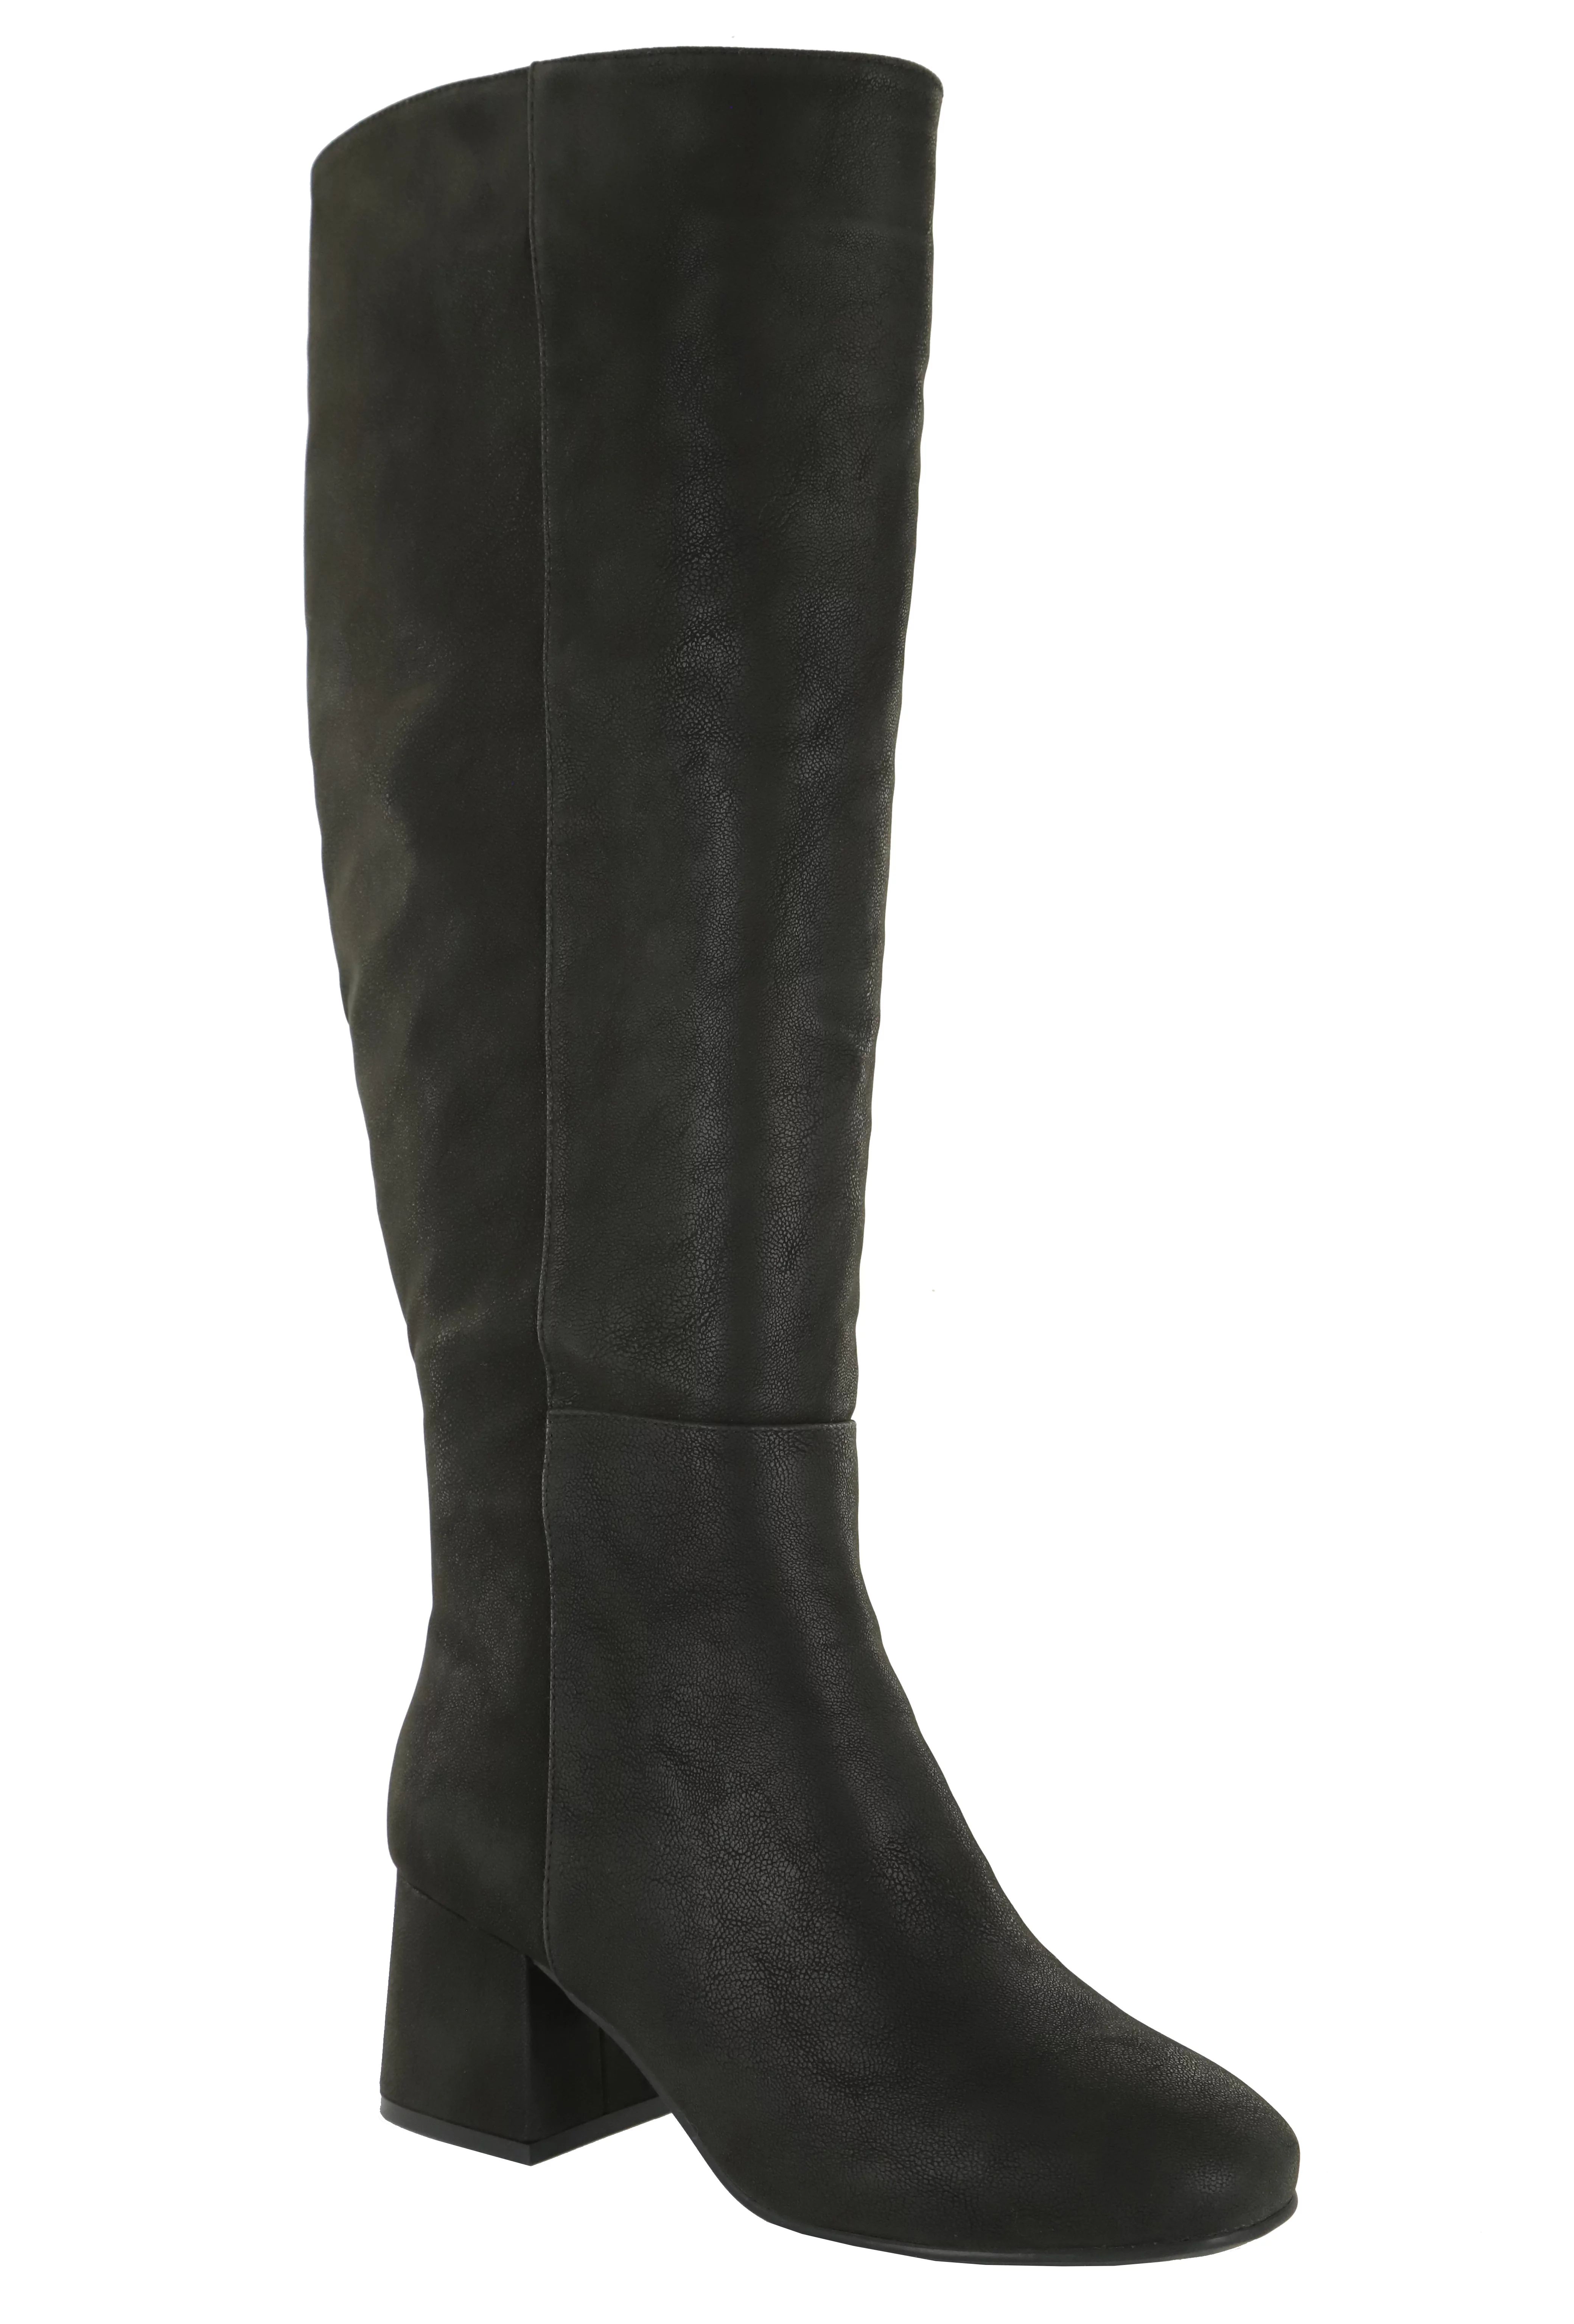 Eloquii Elements Women's Wide Calf Block Heel Dress Boots | Walmart (US)